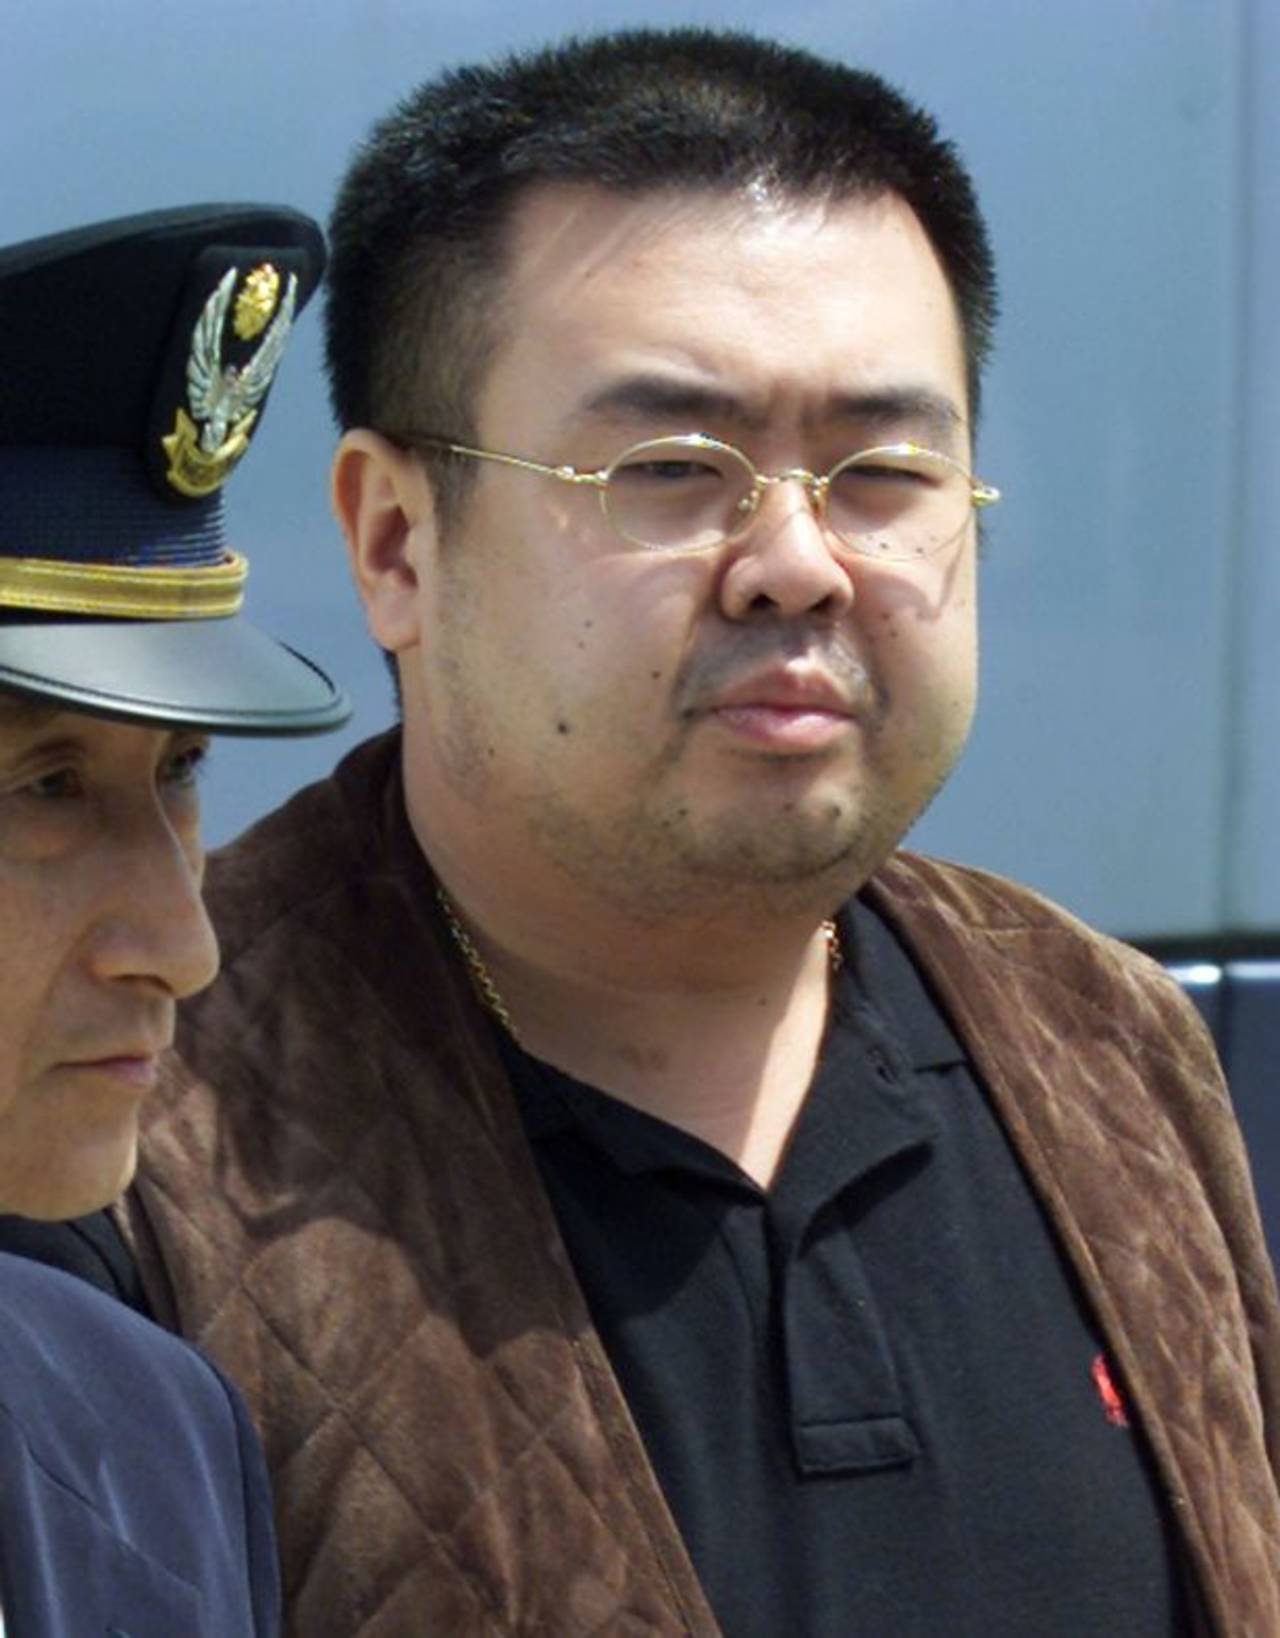 Sanción. Washington concluyó que a Kim Jong nam lo asesinaron con una dosis de un agente químico. (ESPECIAL)